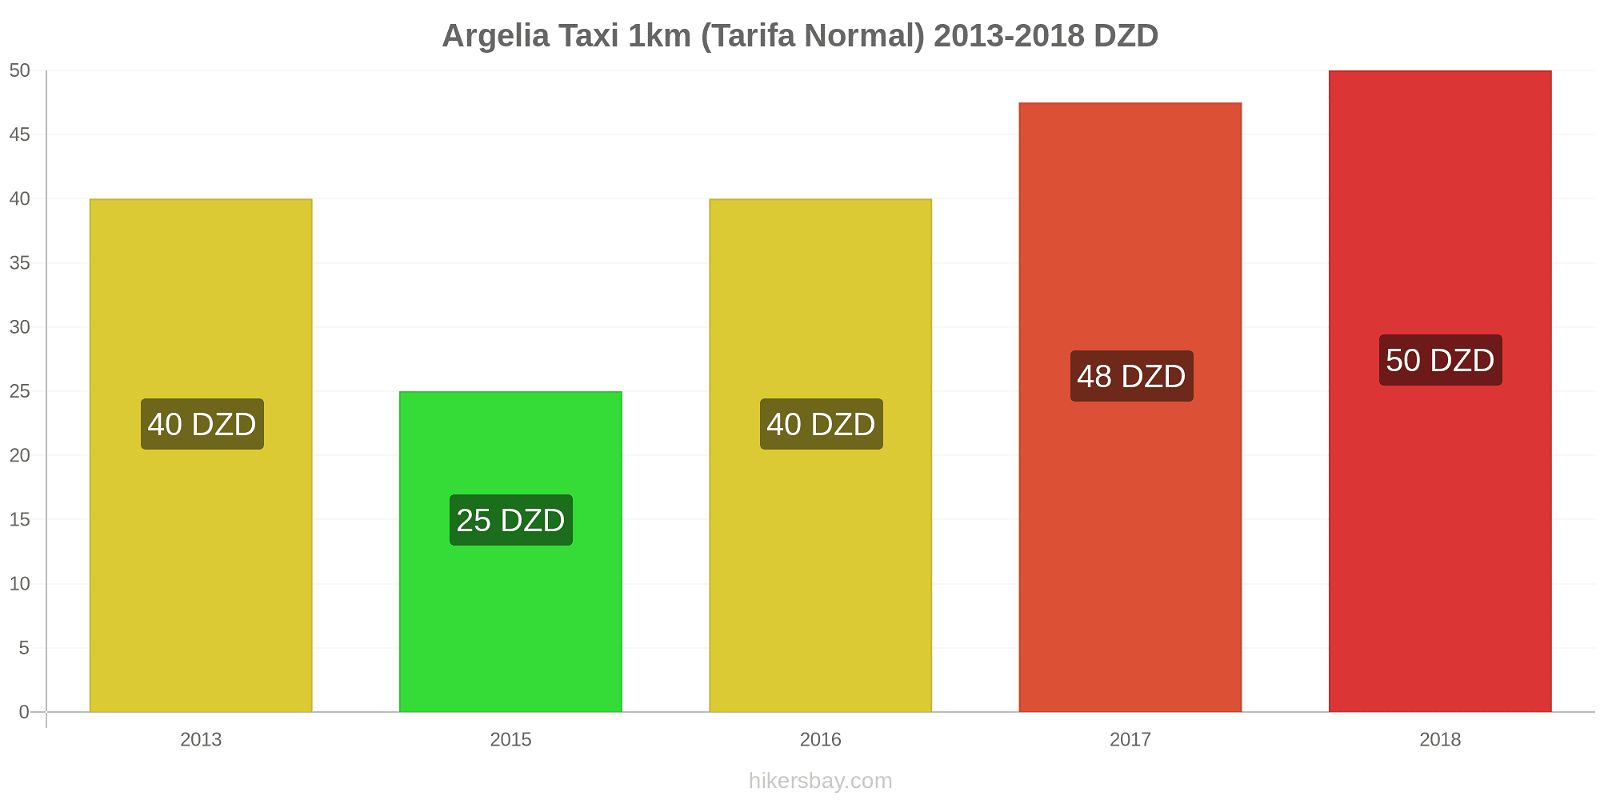 Argelia cambios de precios Taxi 1km (tarifa normal) hikersbay.com